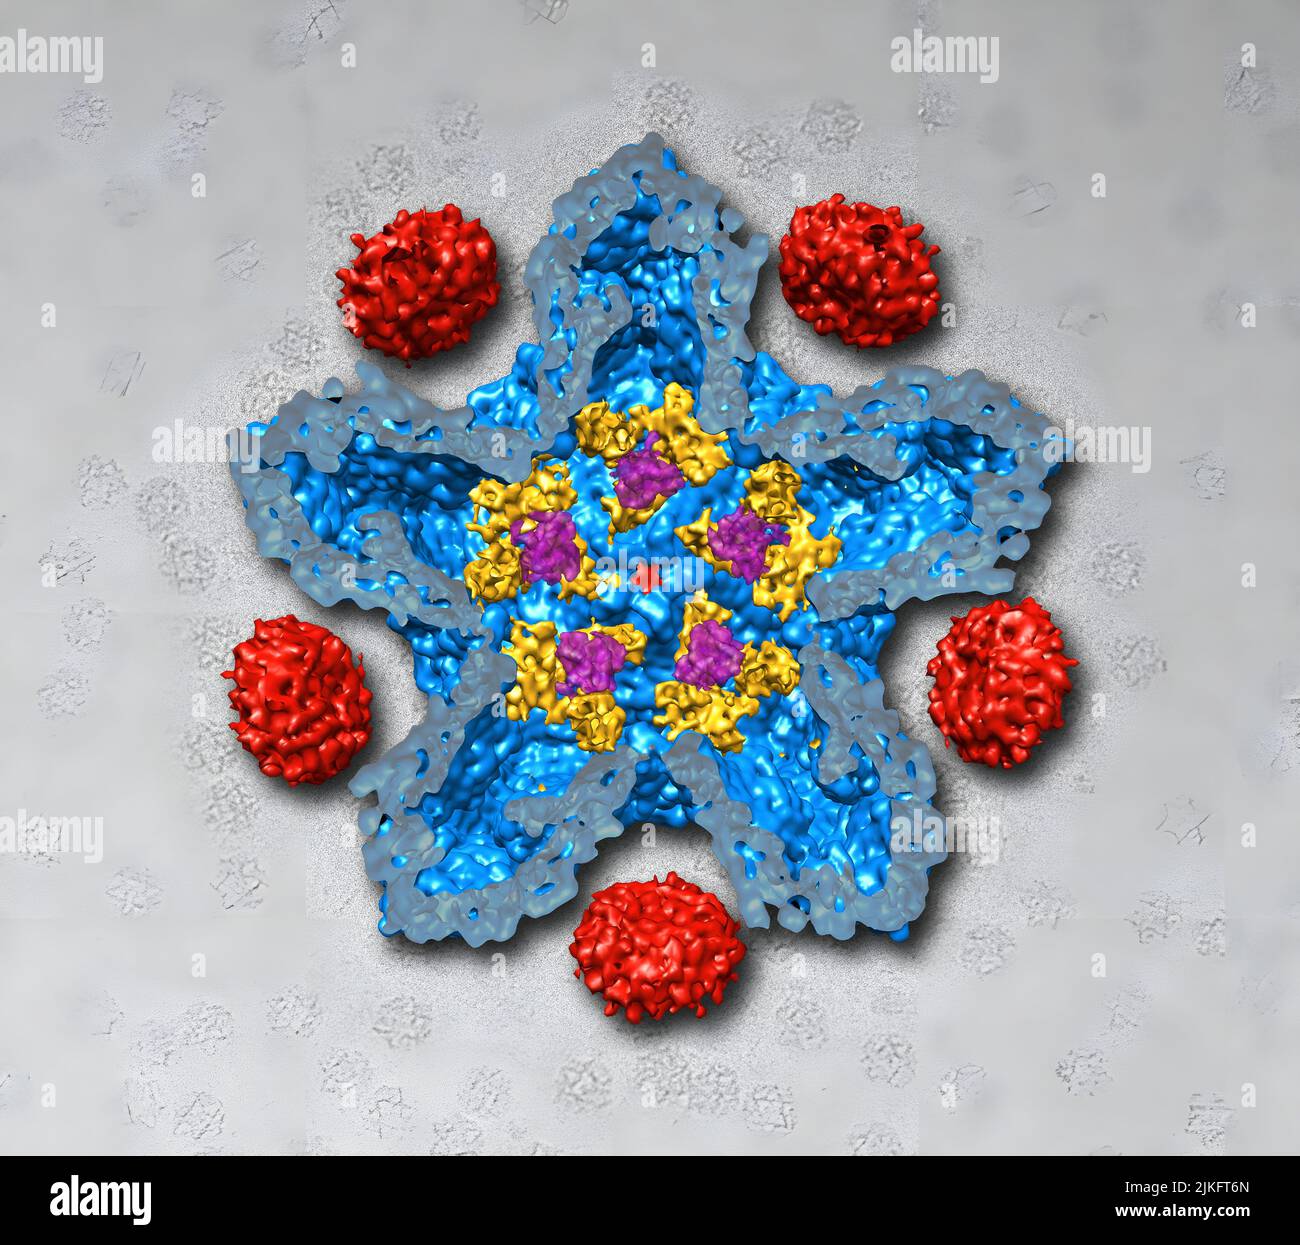 El bacteriófago Phi-6, que sirve como sistema modelo para el rotavirus, es la causa más común de enfermedades diarreicas en lactantes y niños pequeños. La comprensión de cómo se ensambla el bacteriófago puede ayudar a los científicos a desarrollar nuevas formas de tratar las infecciones por rotavirus. Aquí se muestra una imagen de microscopía crioelectrónica de la capa de proteína de Phi-6, o procápside, abierta para mostrar los diferentes tipos de proteína: P1 (azul), P4 (rojo), P7, amarillo, y P2 (púrpura). Foto de stock